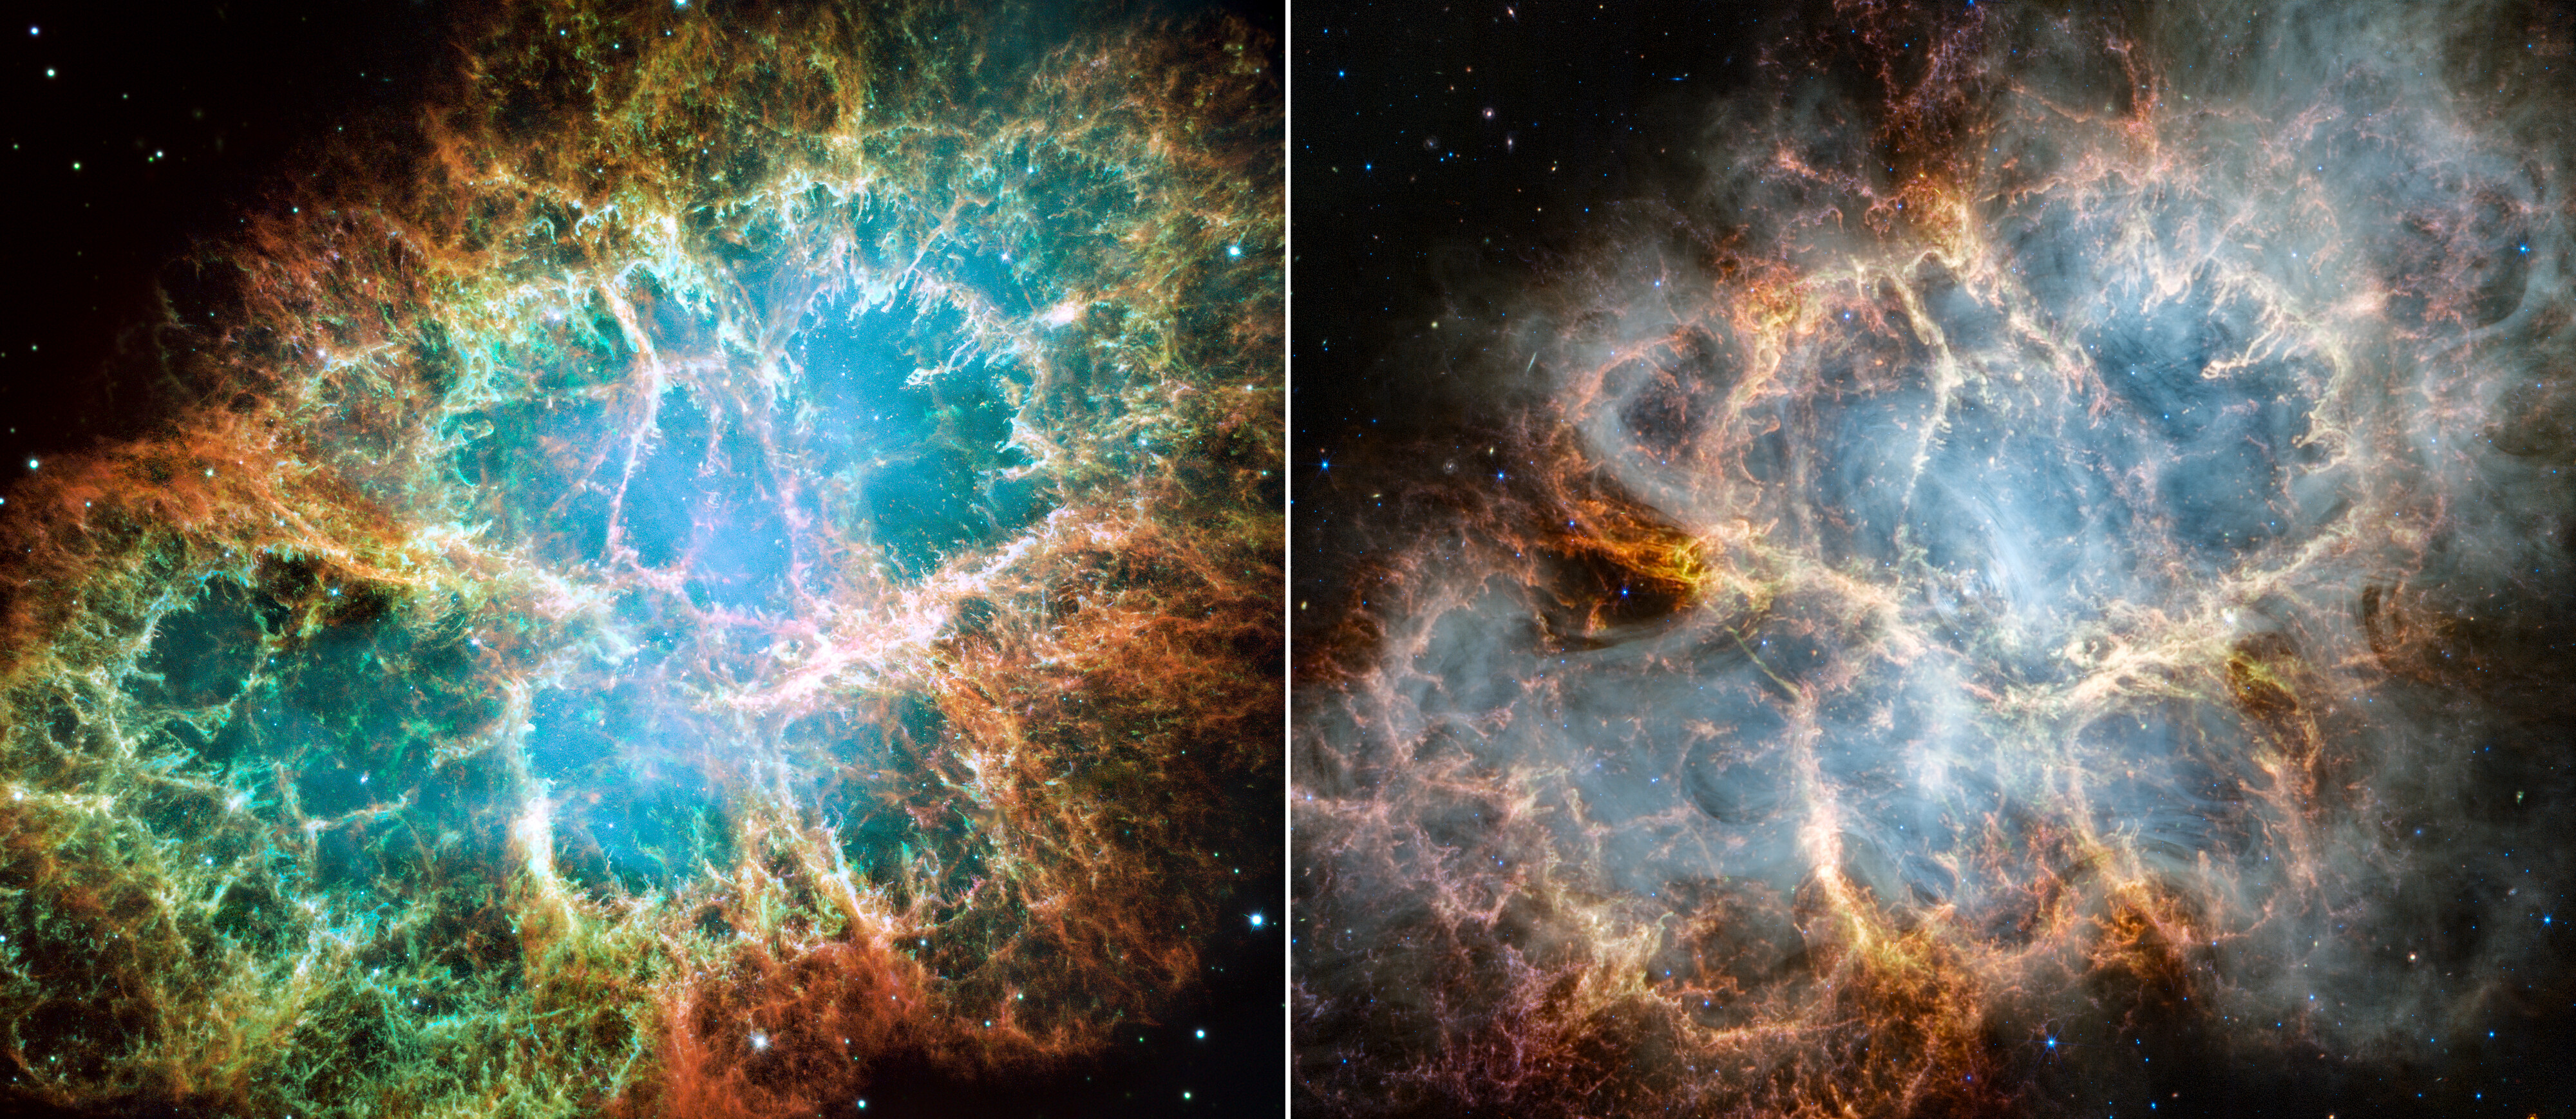 Na ilustracji: Zdjęcia Mgławicy Krab wykonane przez Teleskop Hubble’a w 2005 roku (po lewej ) i ostatnio przez Teleskop Webba (po prawej) odpowiednio w zakresie optycznym i podczerwieni. Na ostatnim zdjęciu uzyskanym z obserwacji kamerami NIRCam i MIRI (bliska / średnia podczerwień) odkryto nowe szczegóły tej mgławicy. Widać delikatną strukturę podobną do klatki, składającą się z puszystych włókien czerwono-pomarańczowych i zagęszczeń pyłu, które otaczają obiekt centralny. Niektóre cechy wnętrza Mgławicy Krab stają się wyraźniejsze i bardziej szczegółowe w podczerwieni. W szczególności w jej wnętrzu wyraźniej widać promieniowanie synchrotronowe, które na zdjęciu ma wygląd mlecznej struktury podobnej do dymu. Na stronie internetowej ESA można interaktywnie oglądać oba zdjęcia przesuwając suwak pomiędzy zdjęciami: z Teleskopu Hubble’a ↔ z Teleskop Webba. Źródło: NASA, ESA, CSA, STScI, Jeff Hester (ASU), Allison Loll (ASU), Tea Temim (Princeton University)